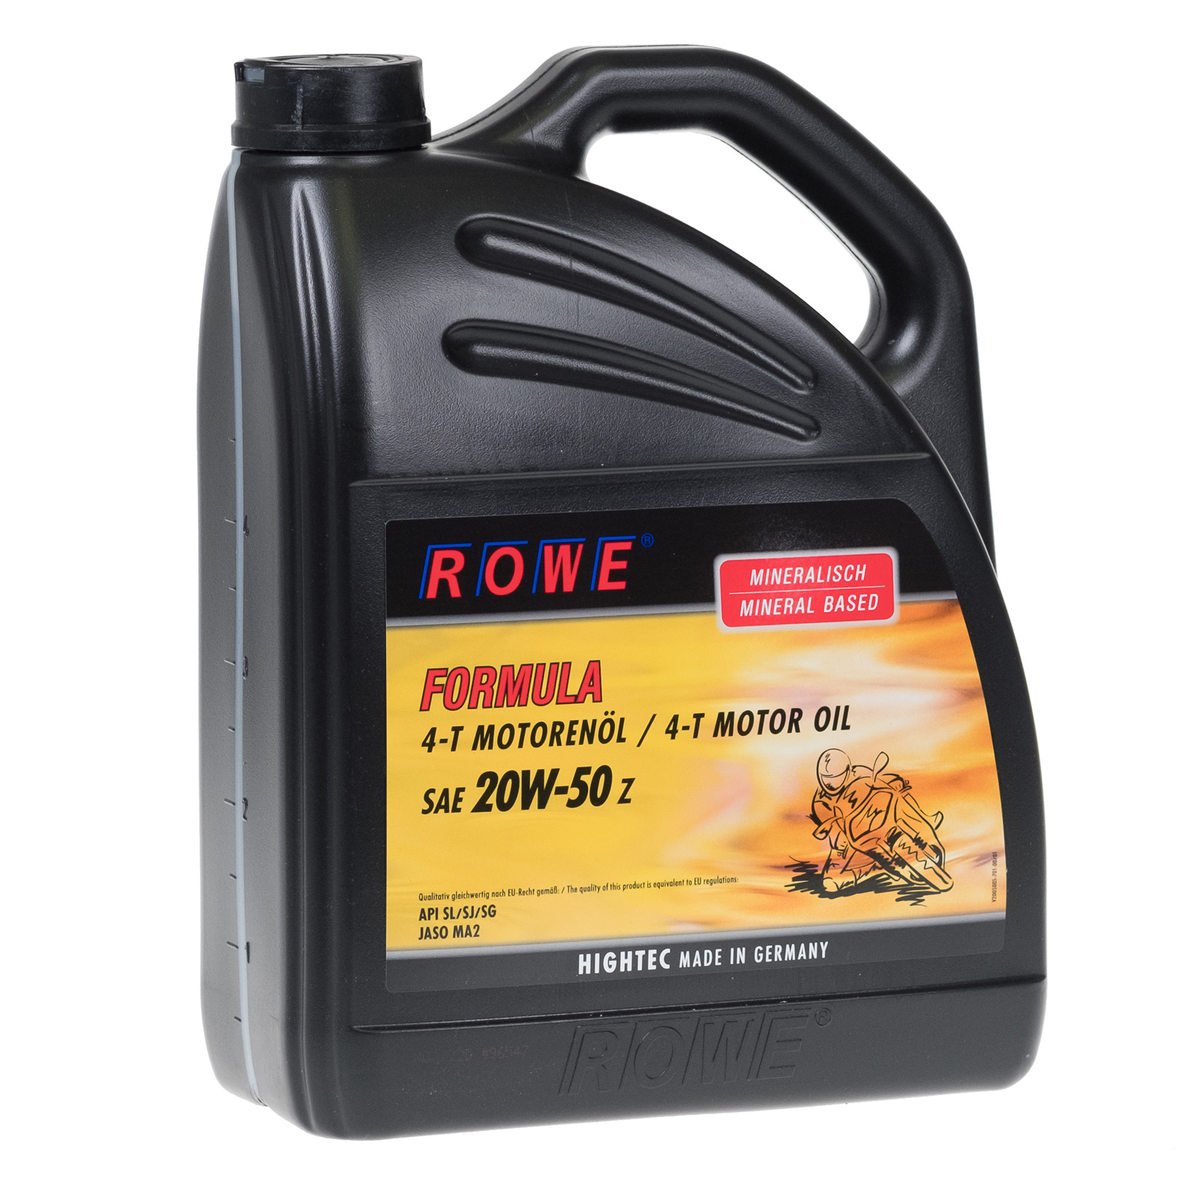 ROWE - 5 Liter HIGHTEC FORMULA SAE 20W-50 Z Motorenöl - Motoröl für 4-Takt Motorräder von ROWE